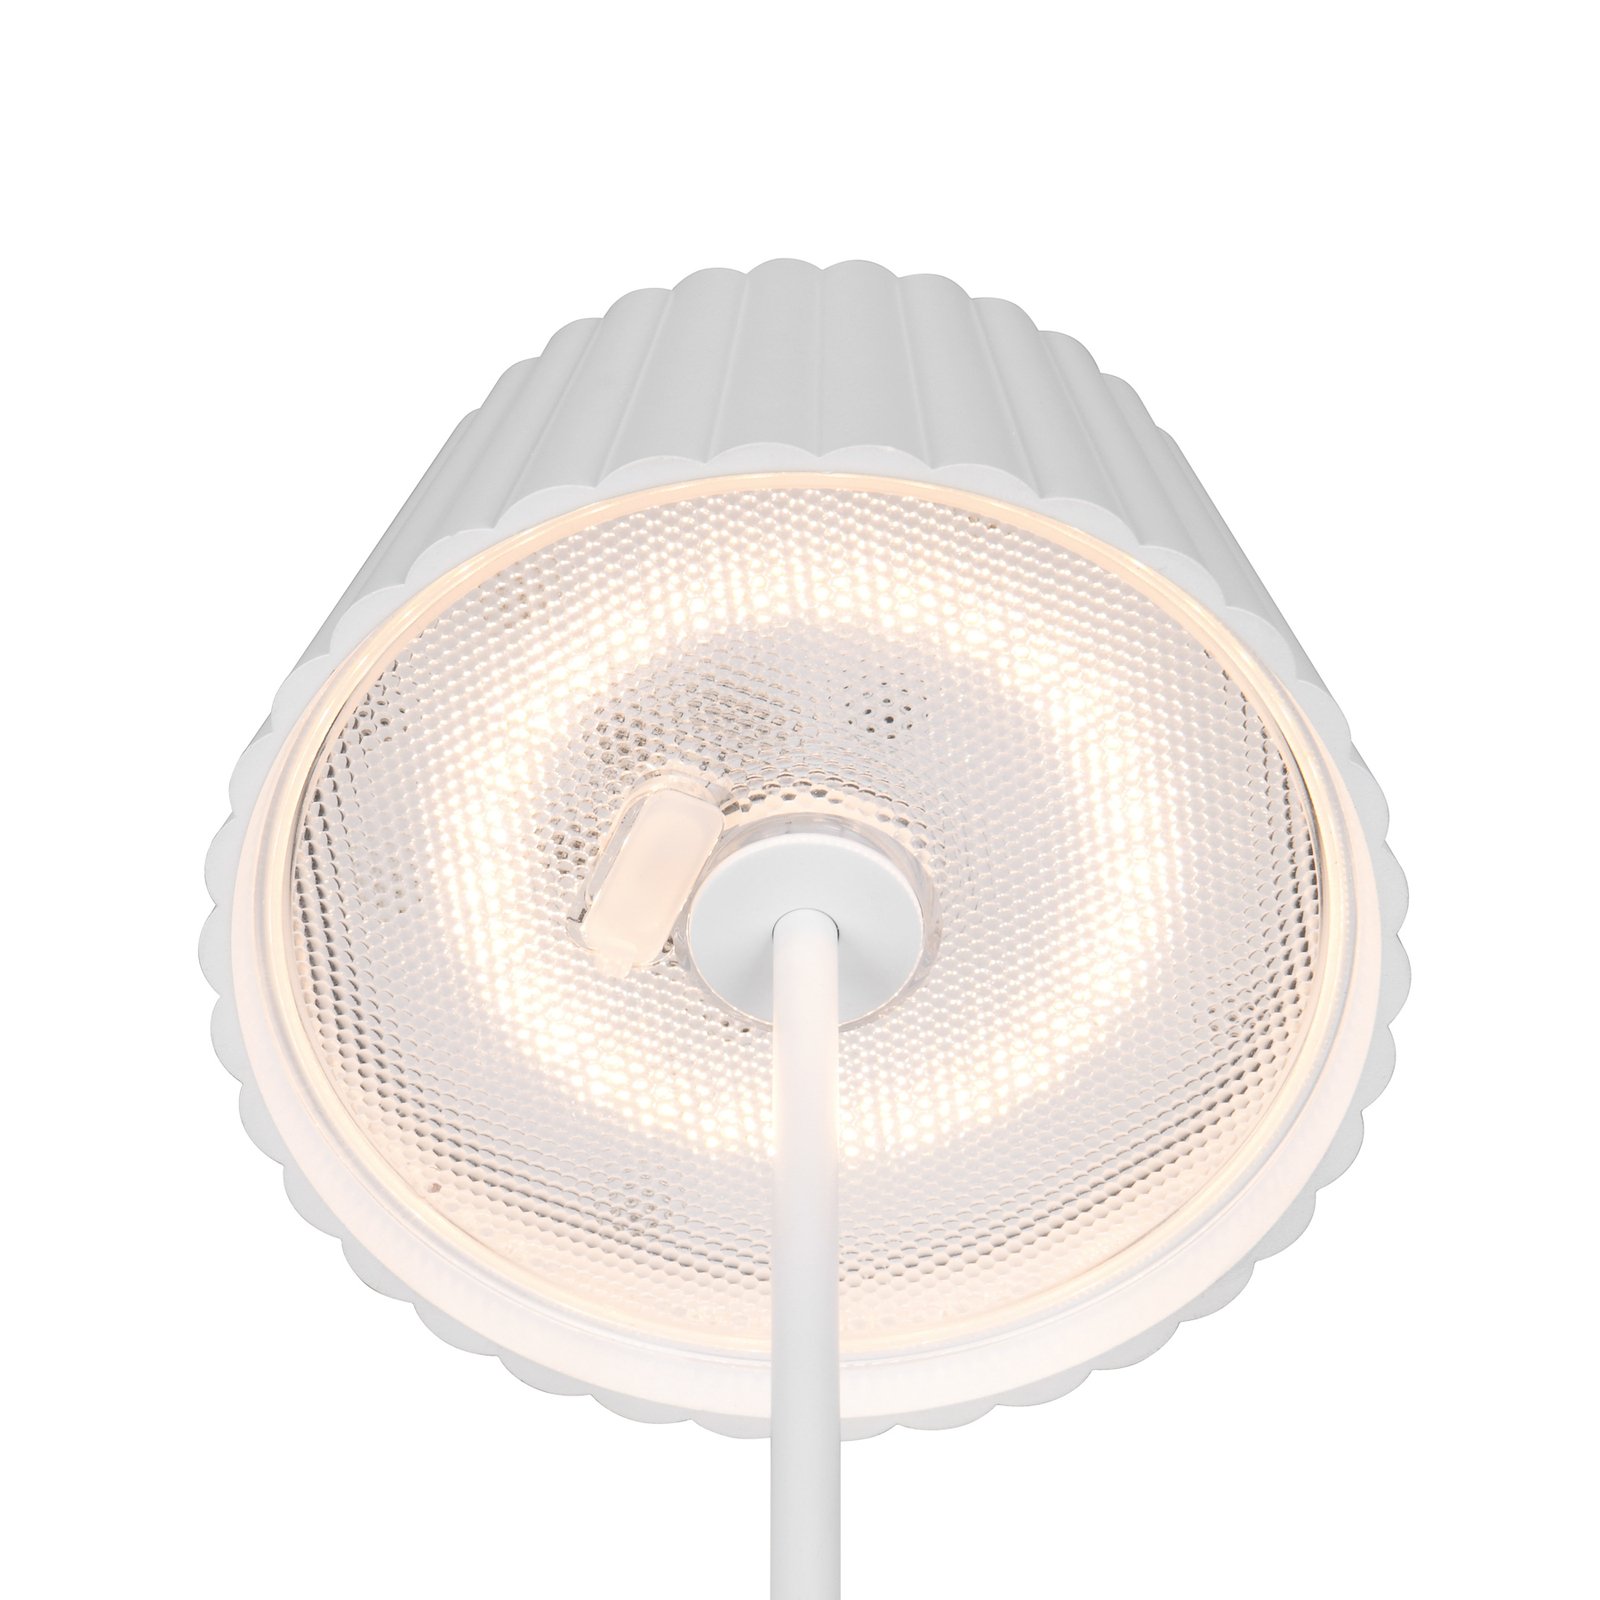 Lampă de podea reîncărcabilă Suarez LED, alb, înălțime 123 cm, metal